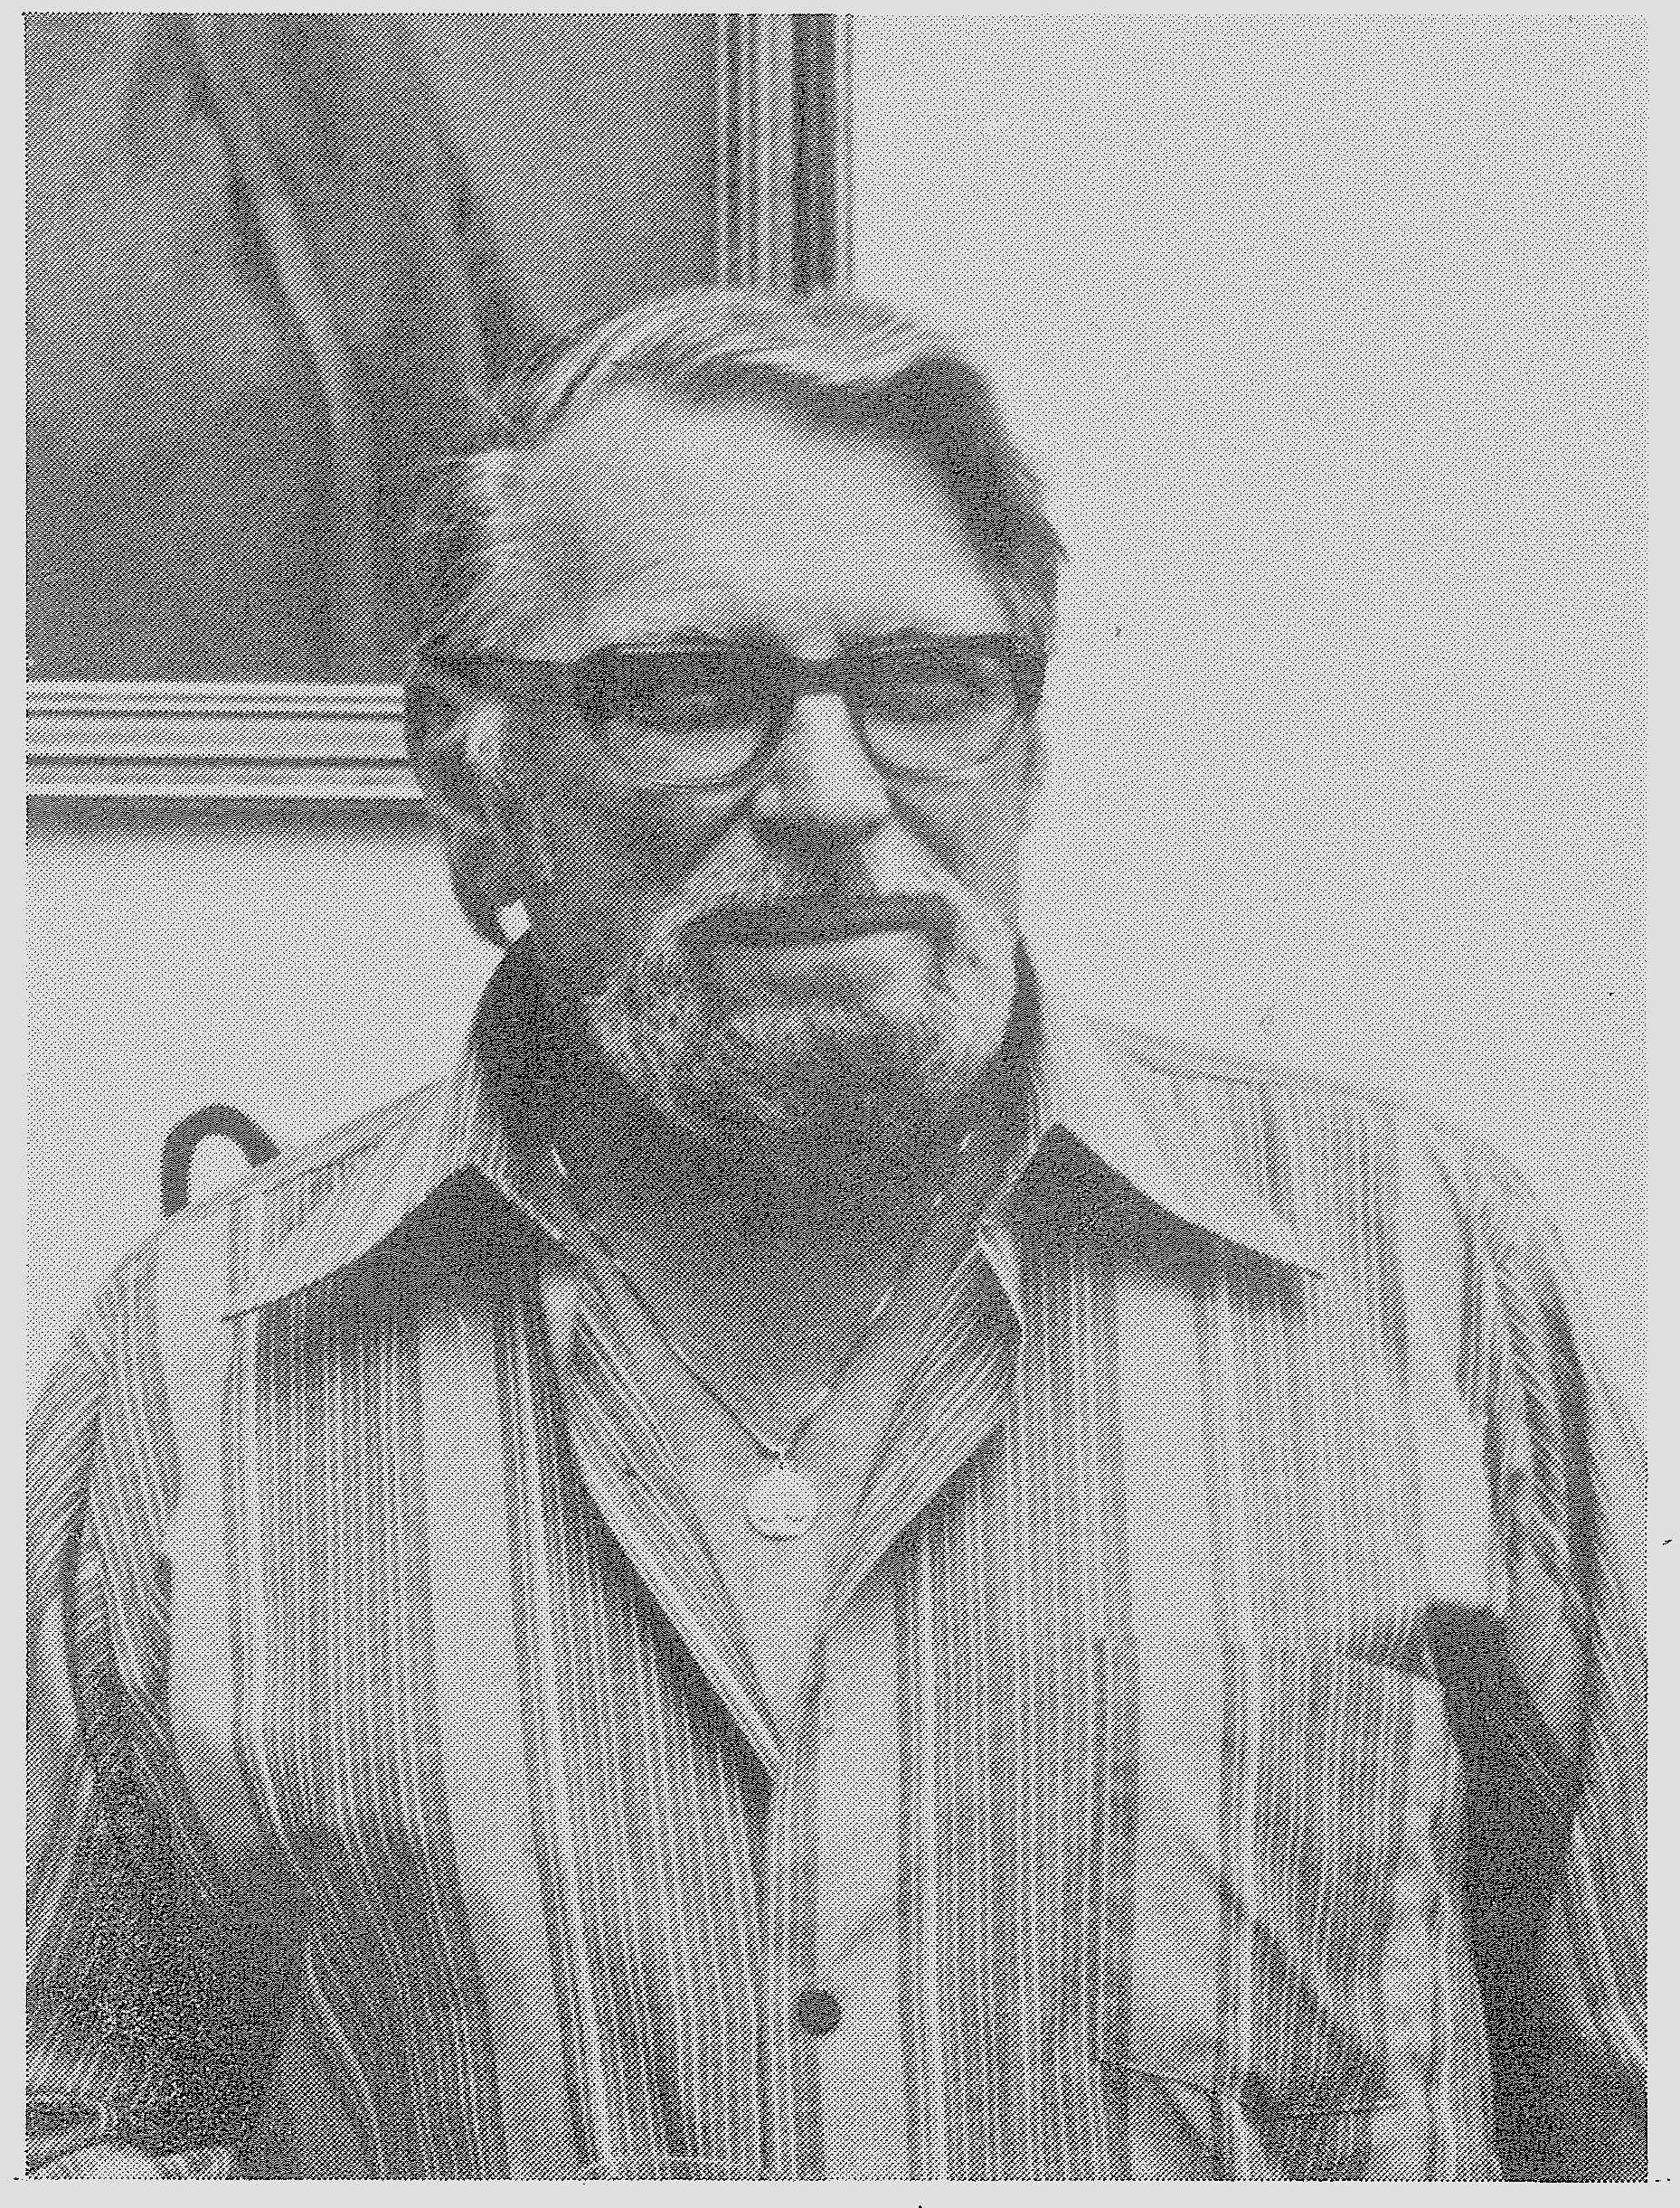 Edward Heffernan in 1978, President